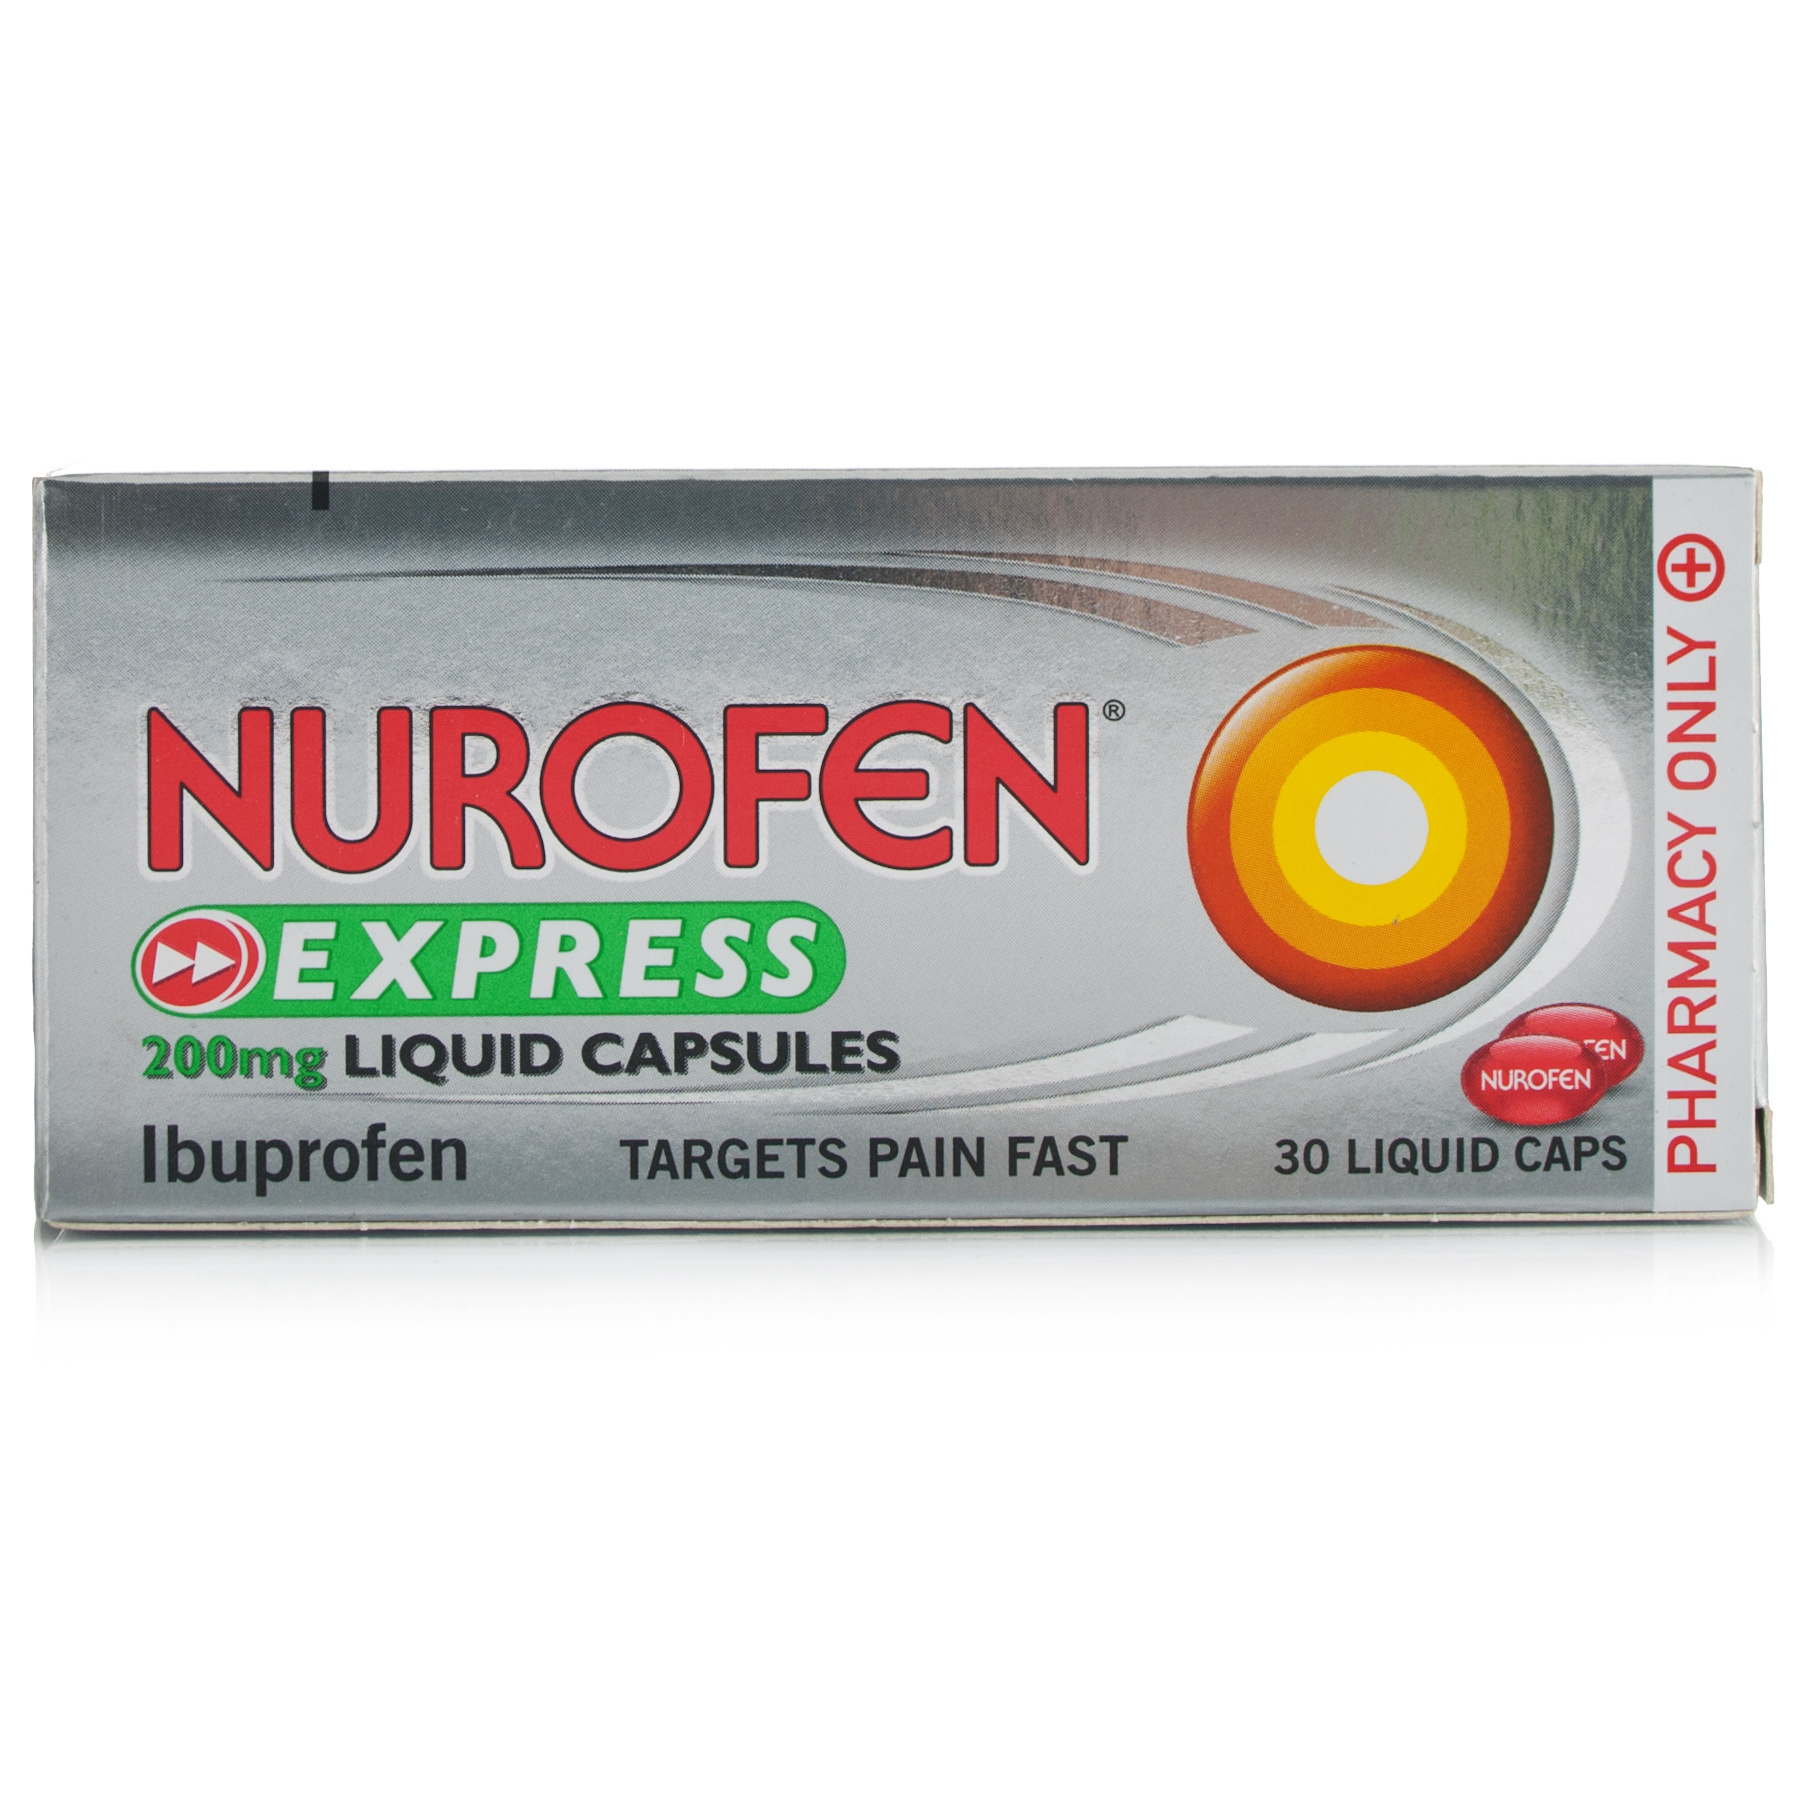 nurofen-express-liquid-capsules-liquid-capsules-chemist-direct